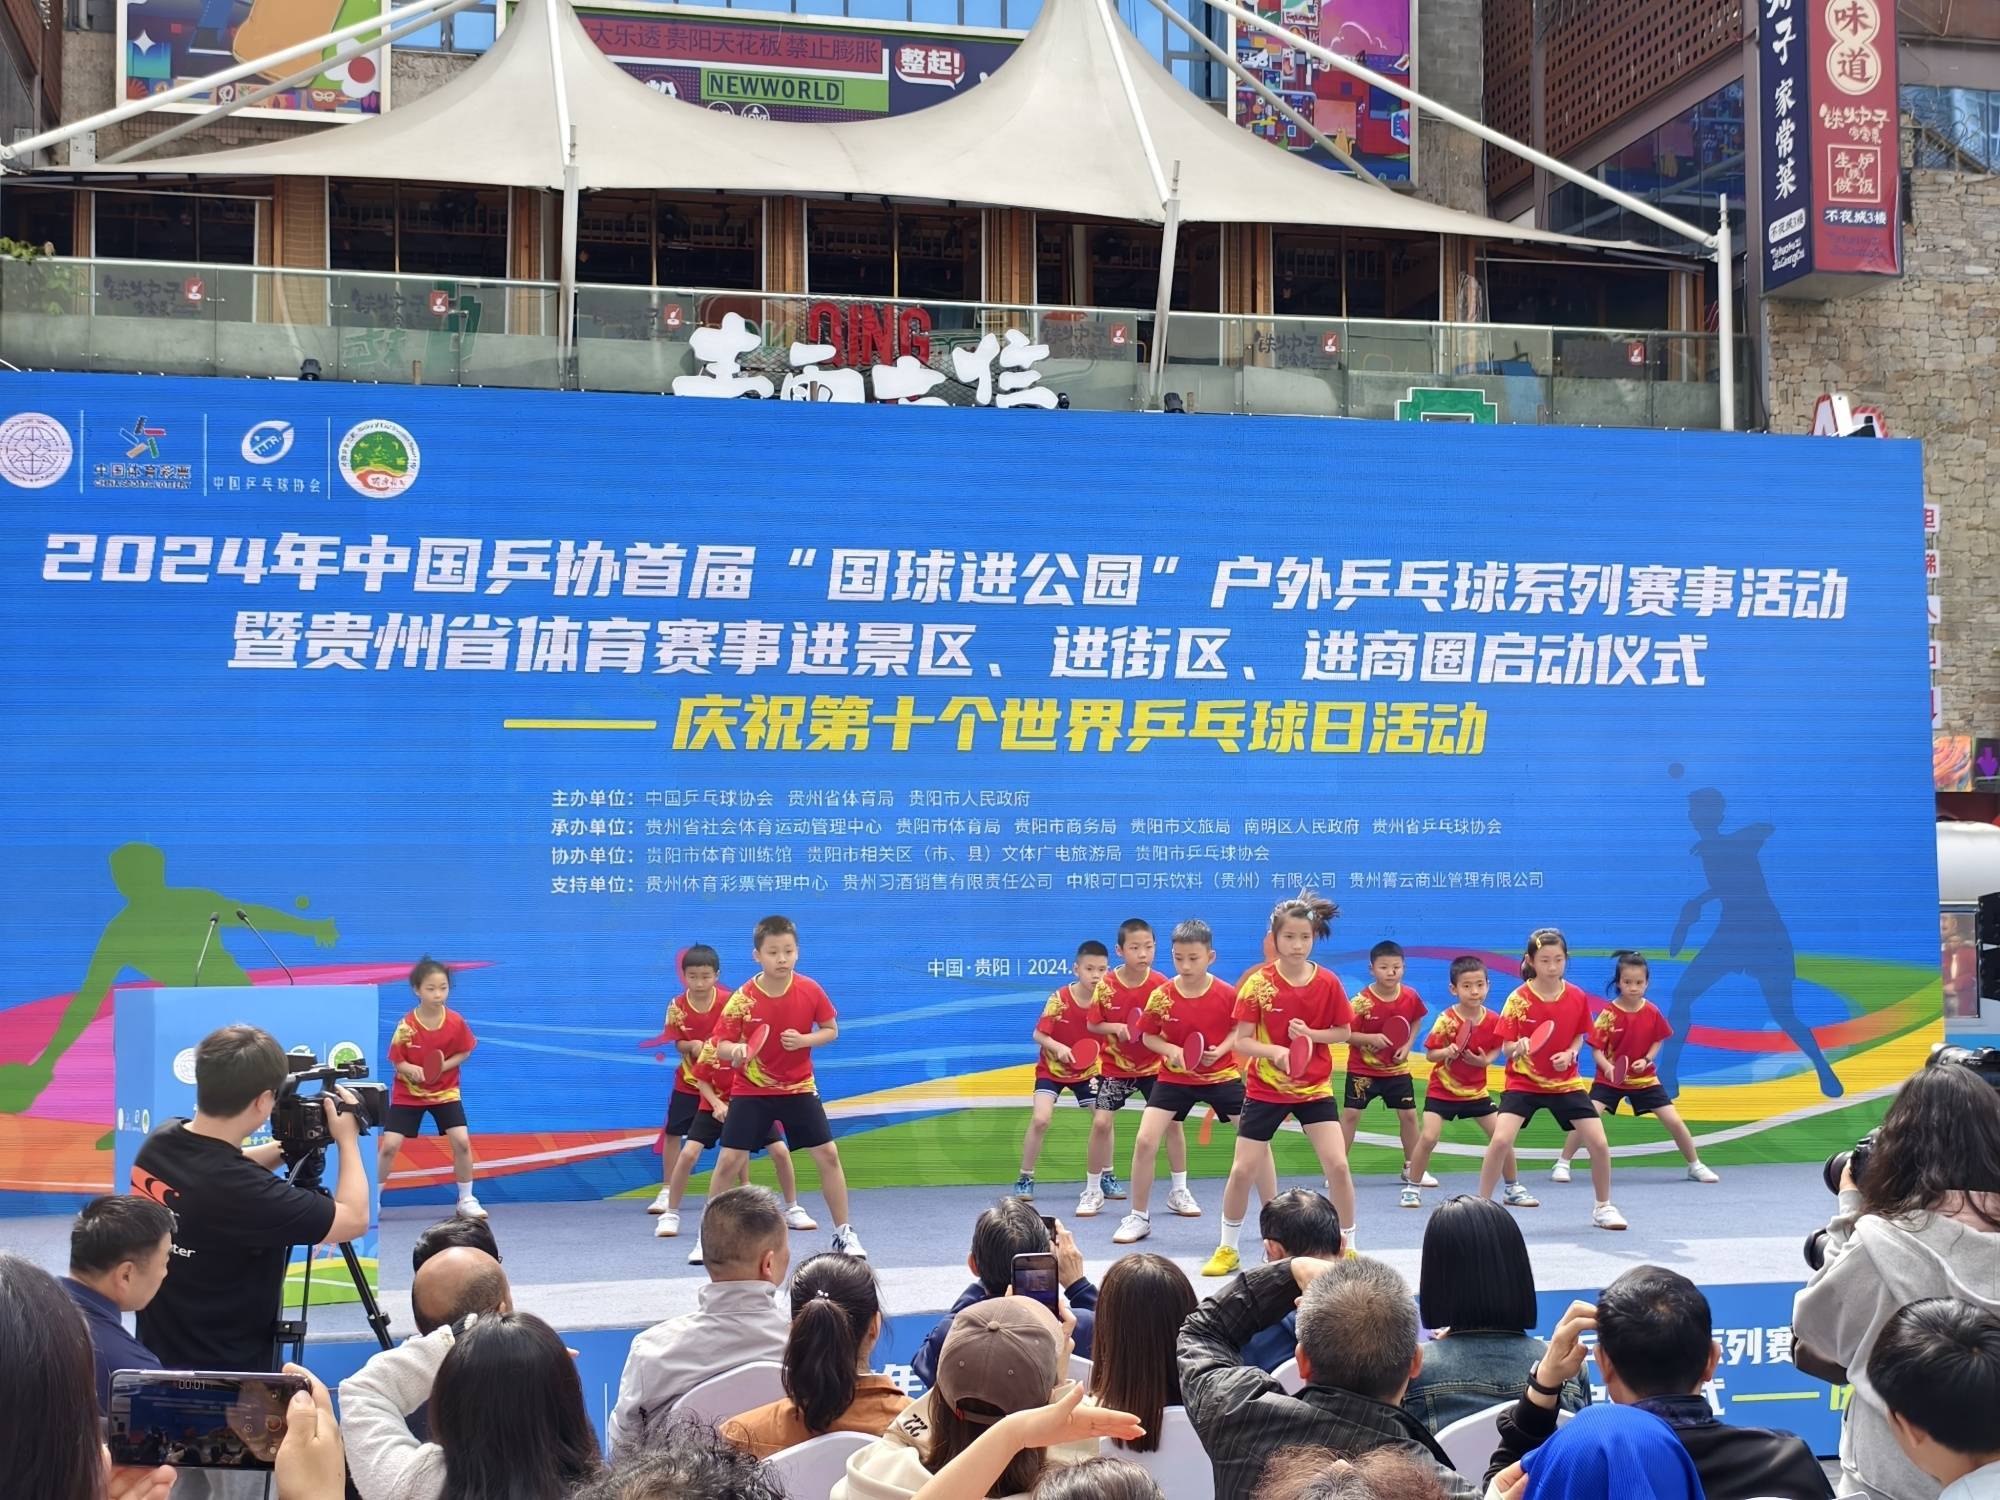 【168sports】首届“国球进公园”户外乒乓球系列赛事活动在贵阳启动